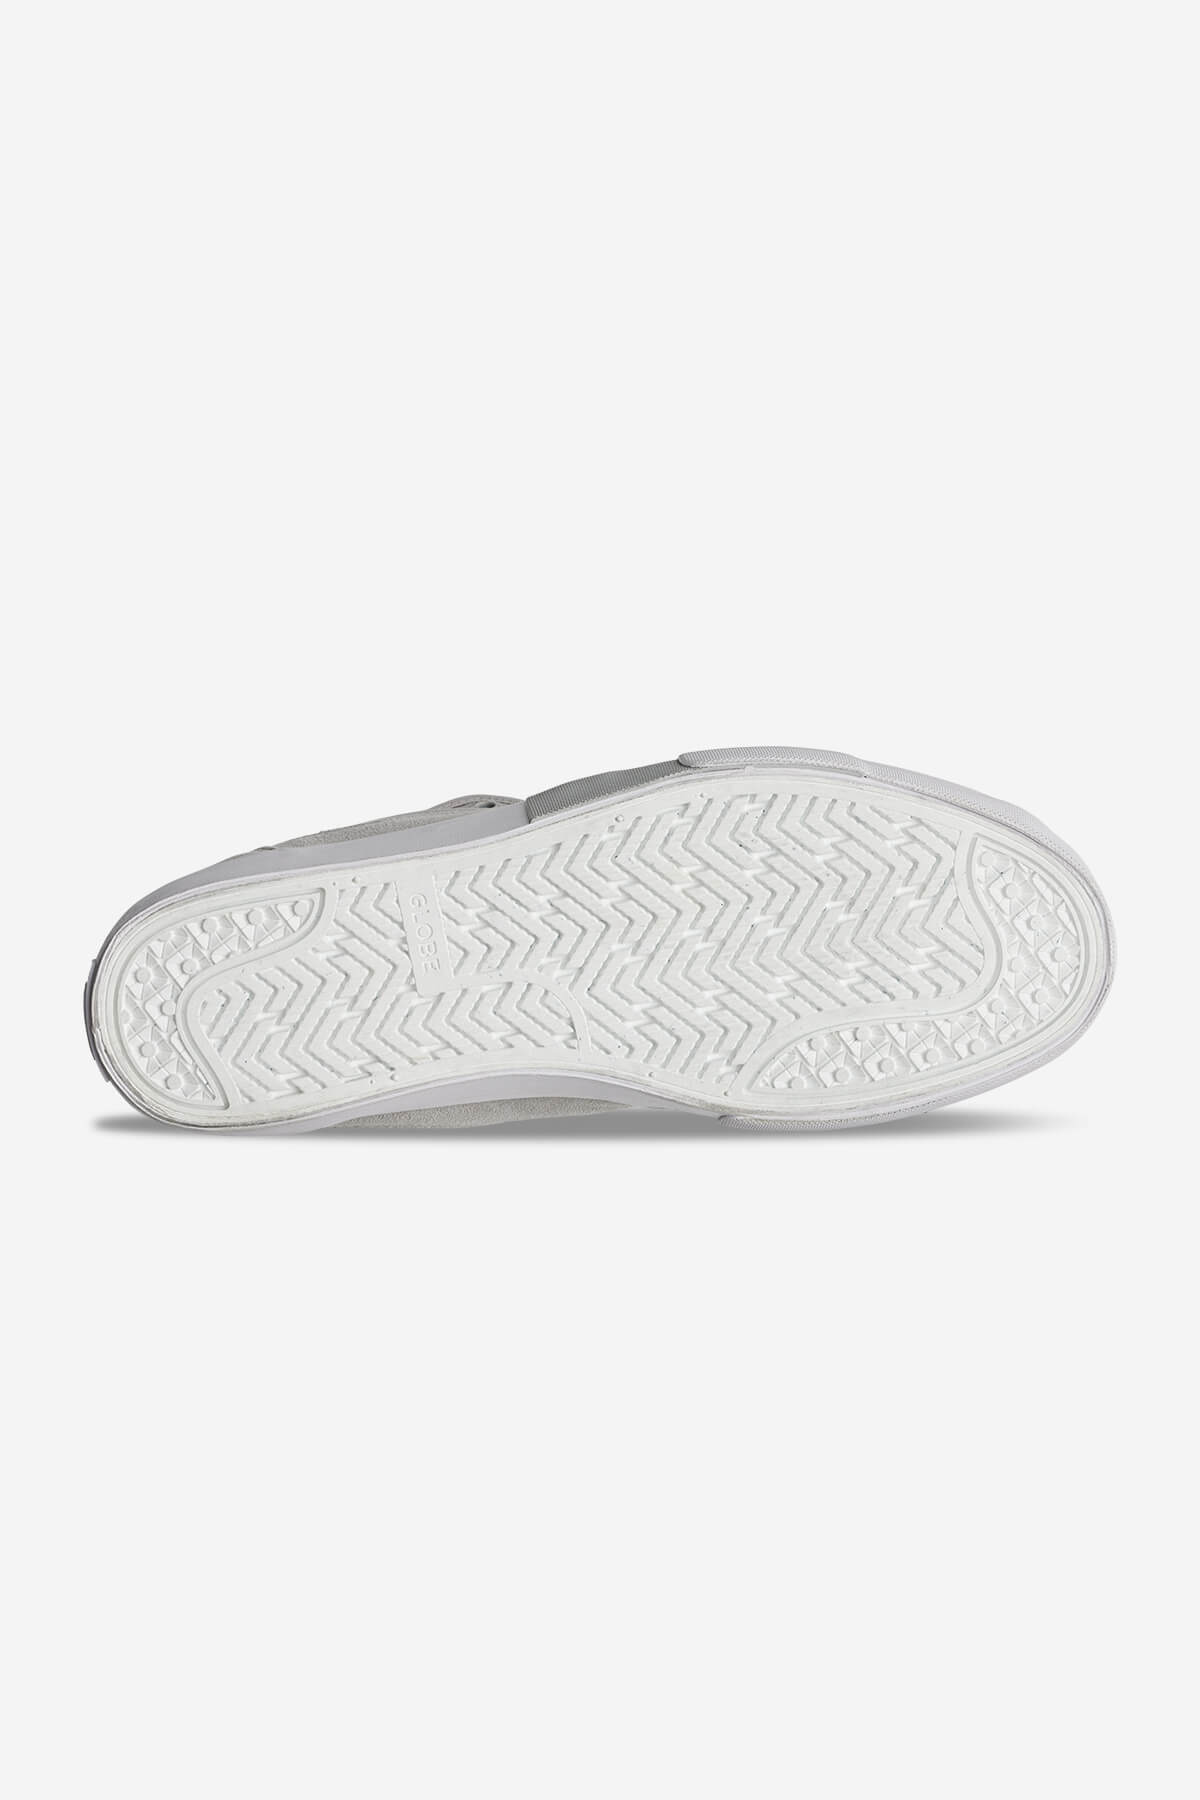 Globe - Mahalo Plus - Cinzento/White - skateboard Sapatos